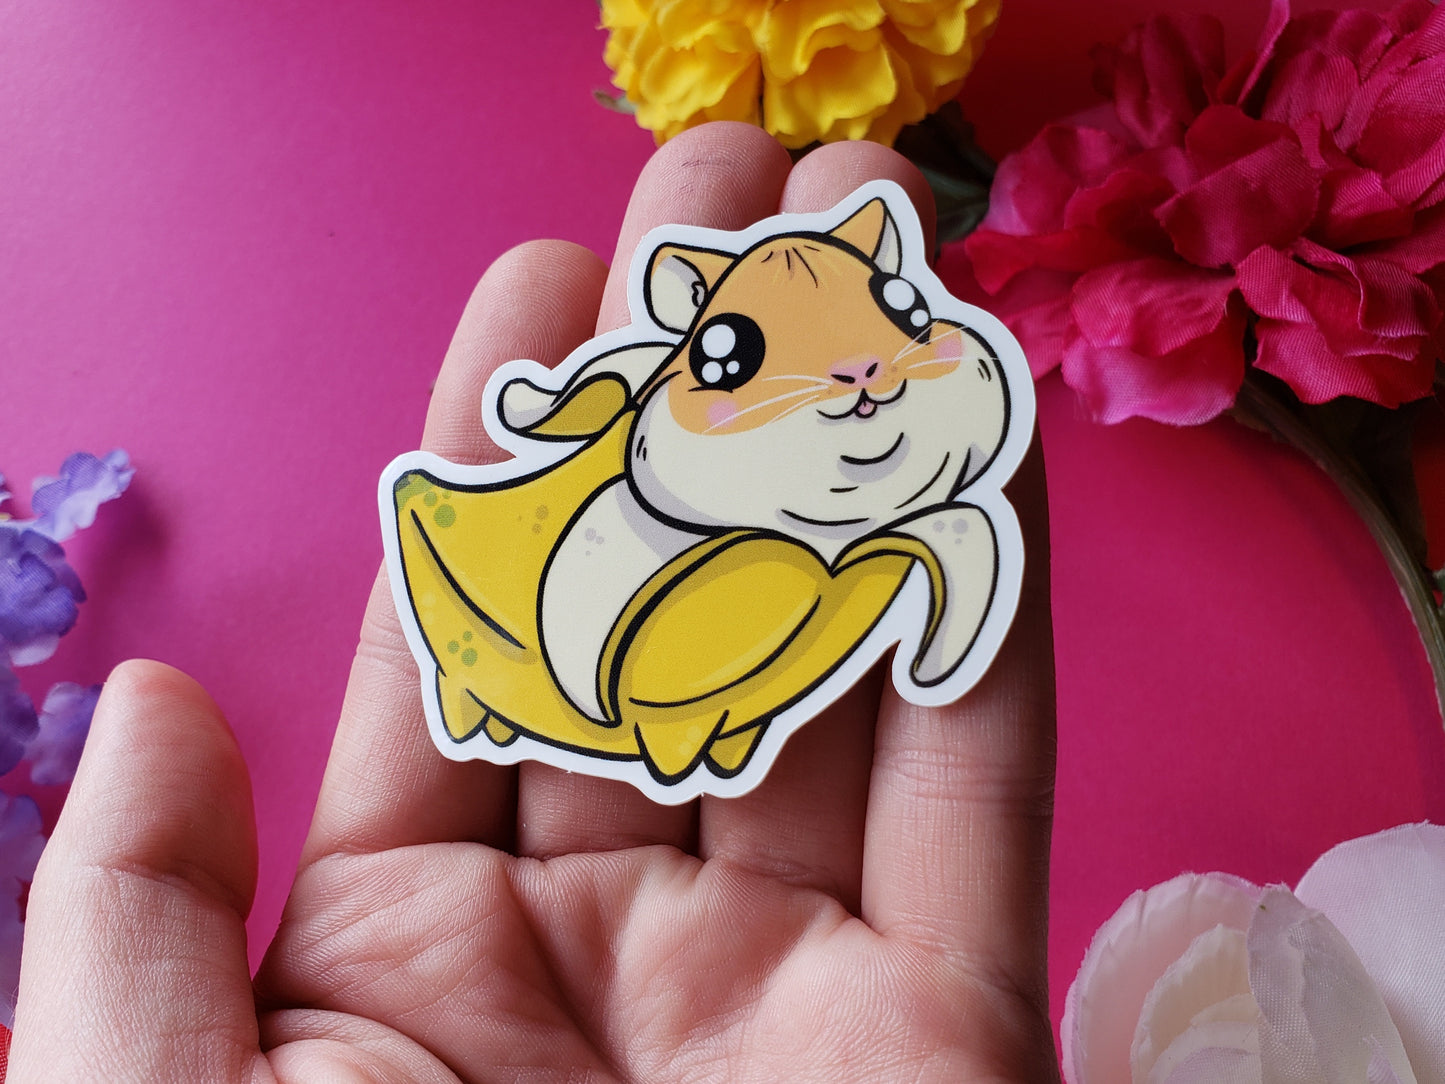 Hamnana Sticker (banana + hamster)